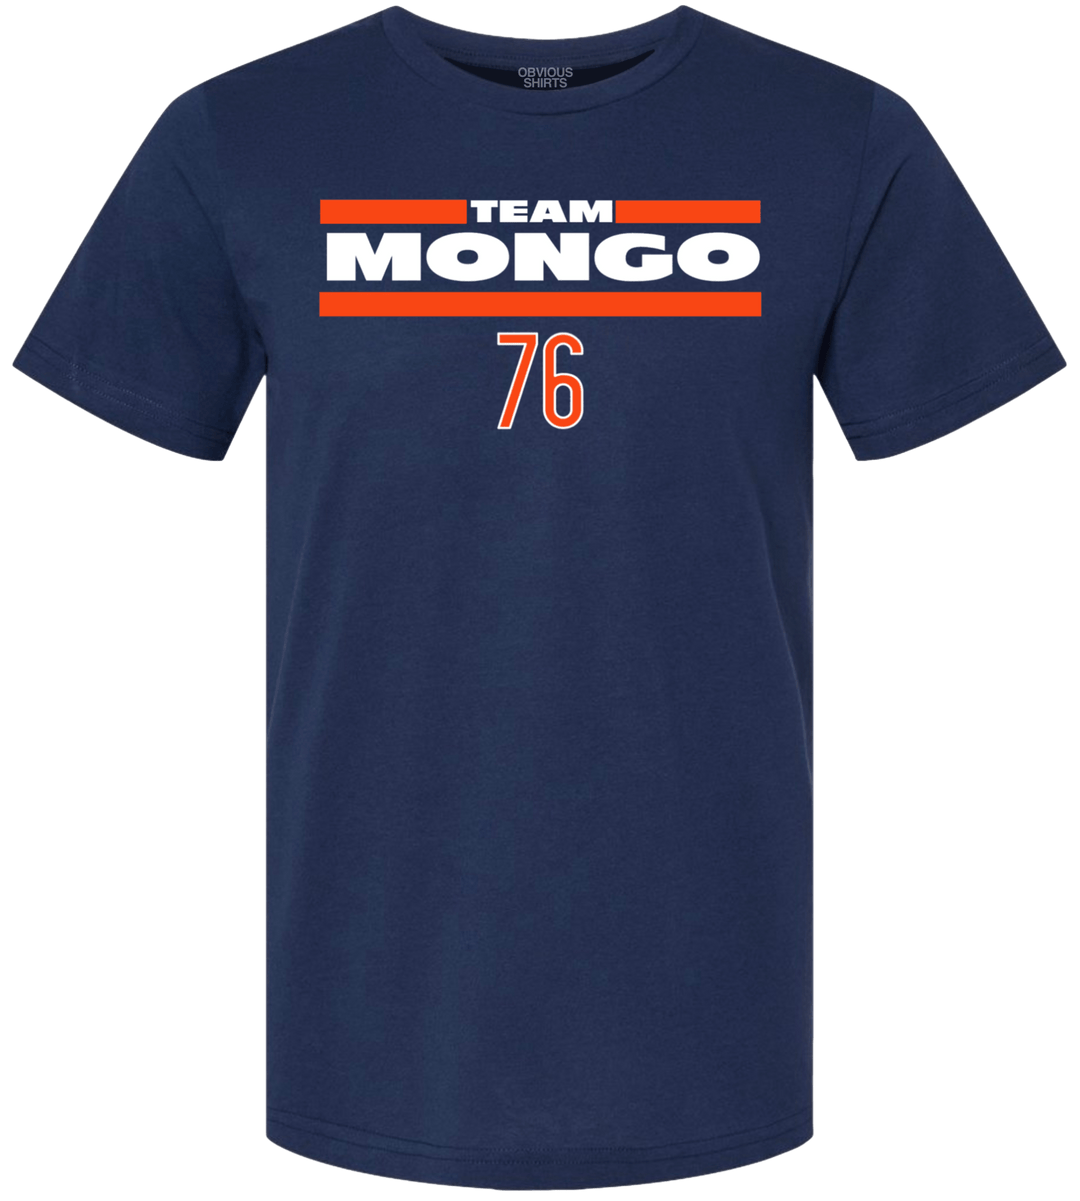 TEAM MONGO #76 - OBVIOUS SHIRTS